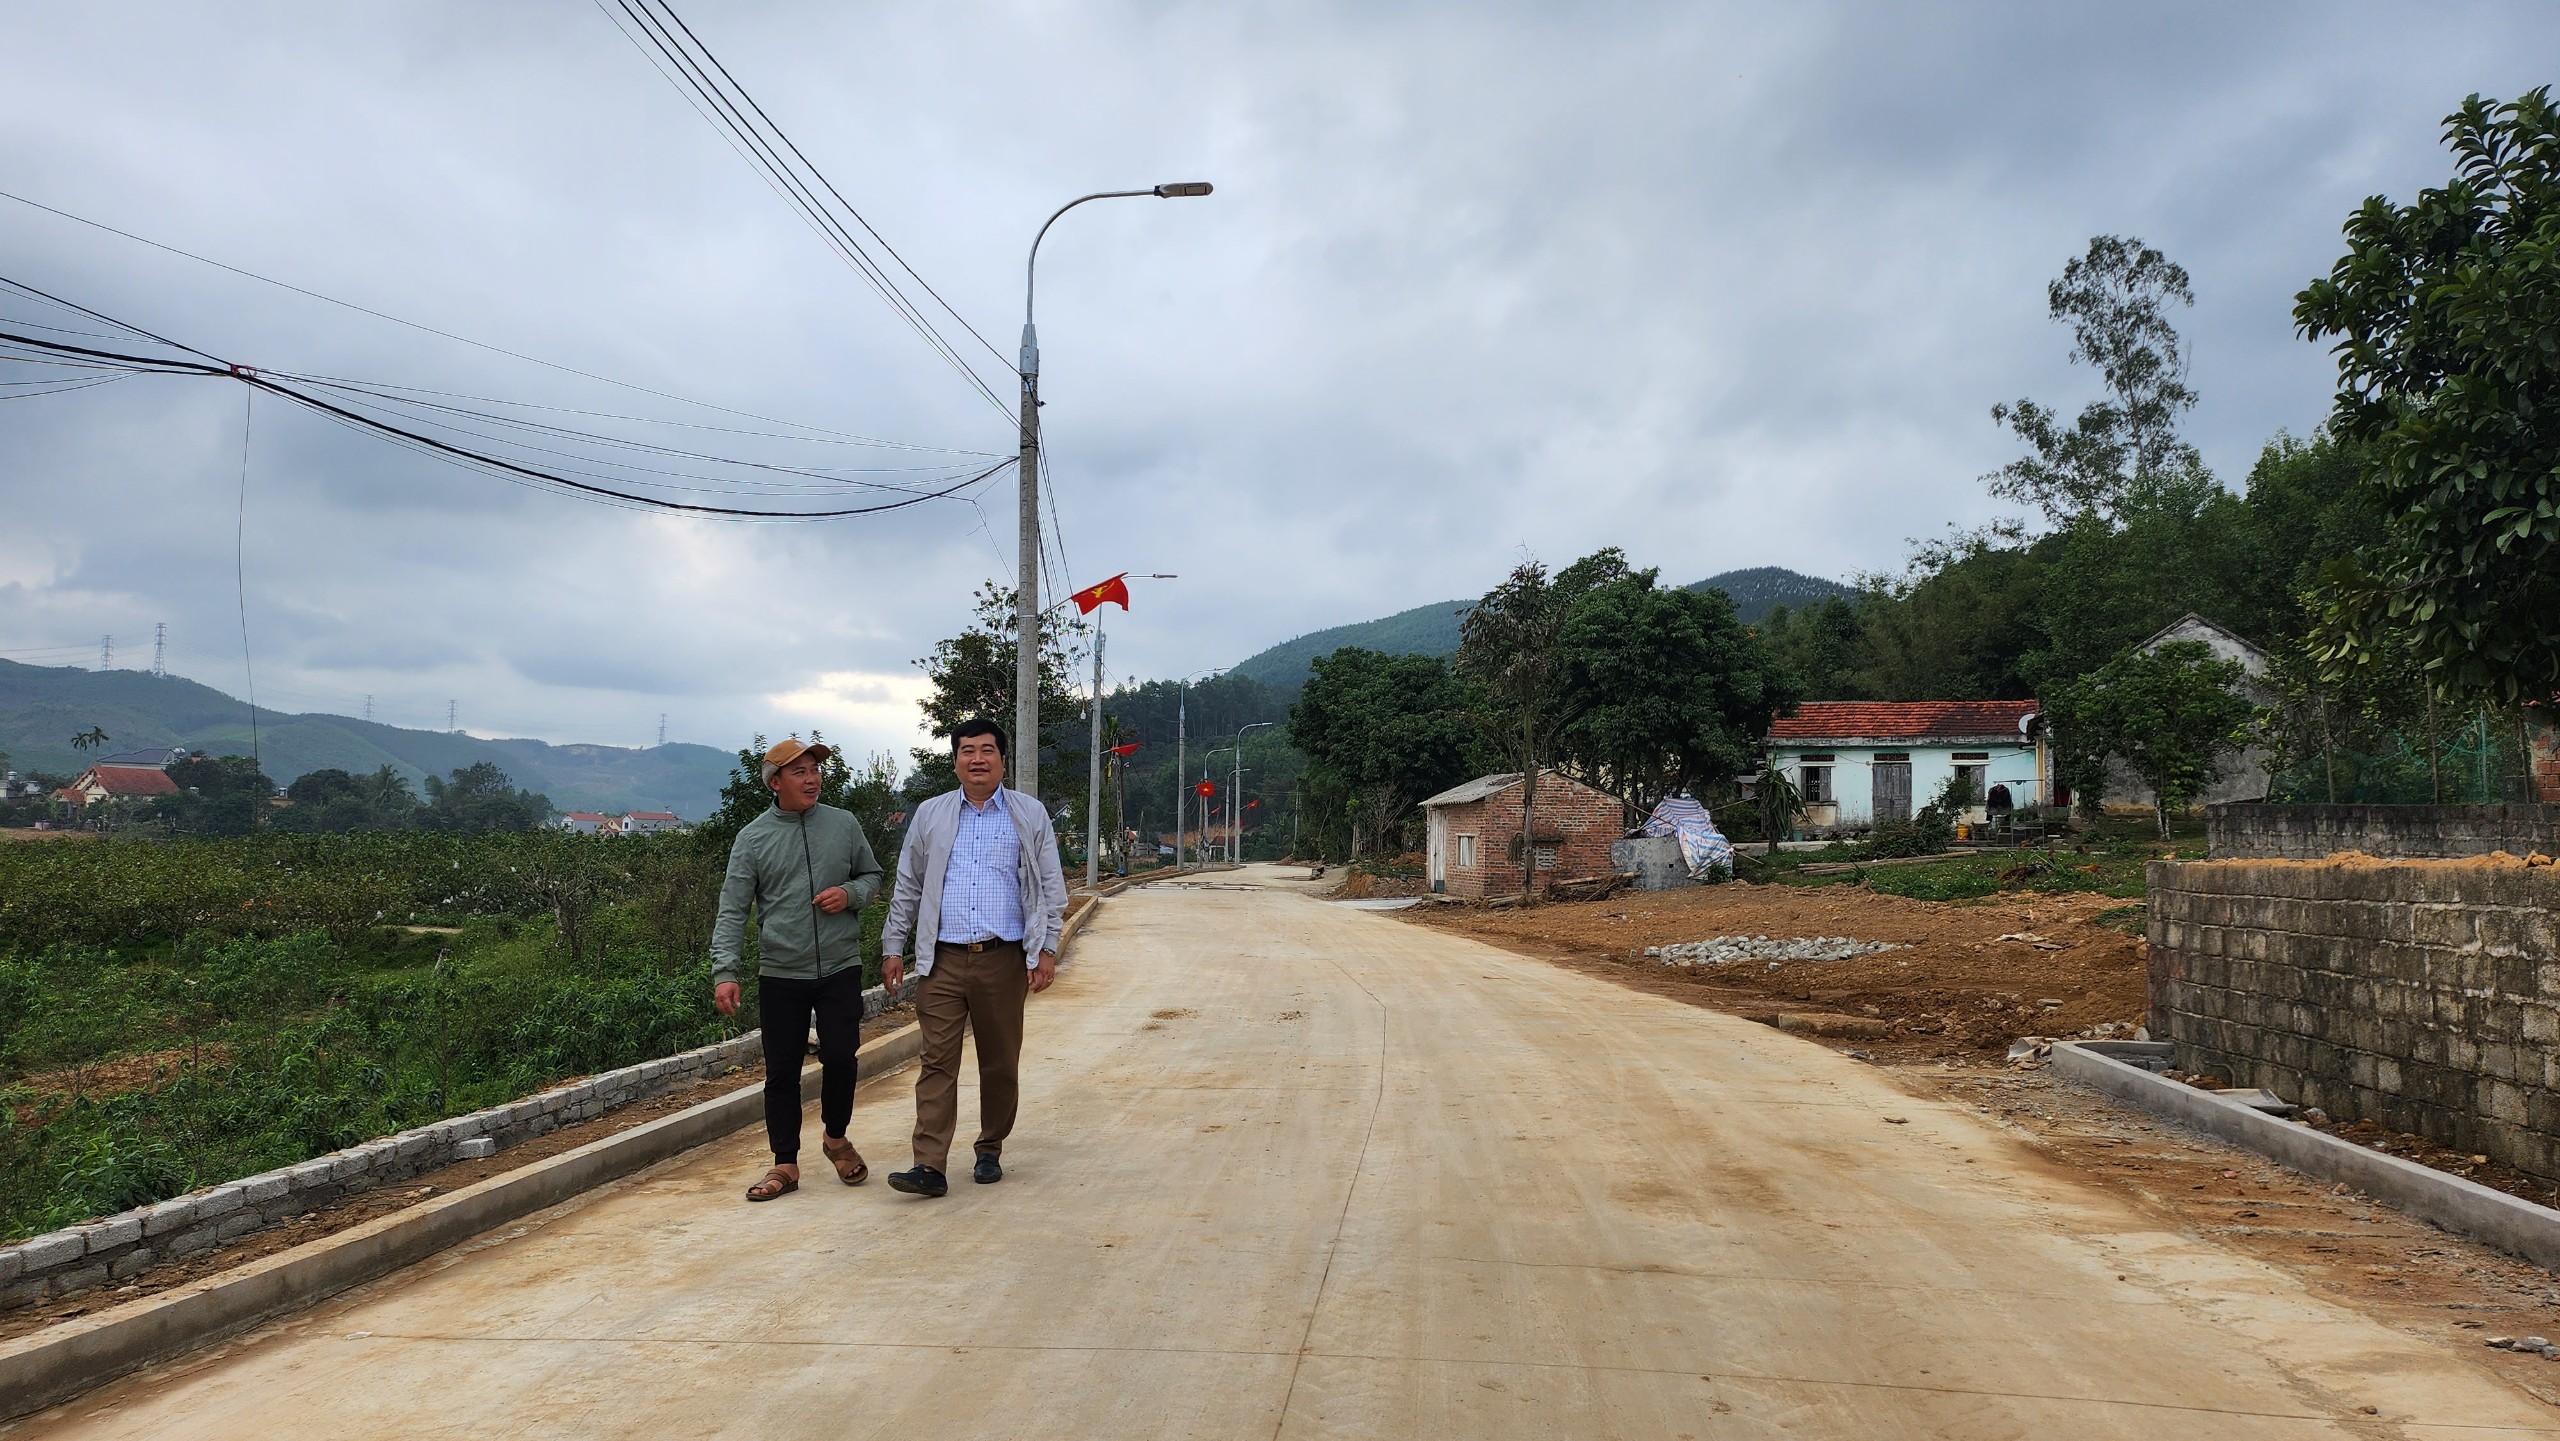 Nhân dân thôn Đồng Giang phấn khởi vì tuyến đường vào thôn được đầu tư xây dựng mới rộng đẹp.